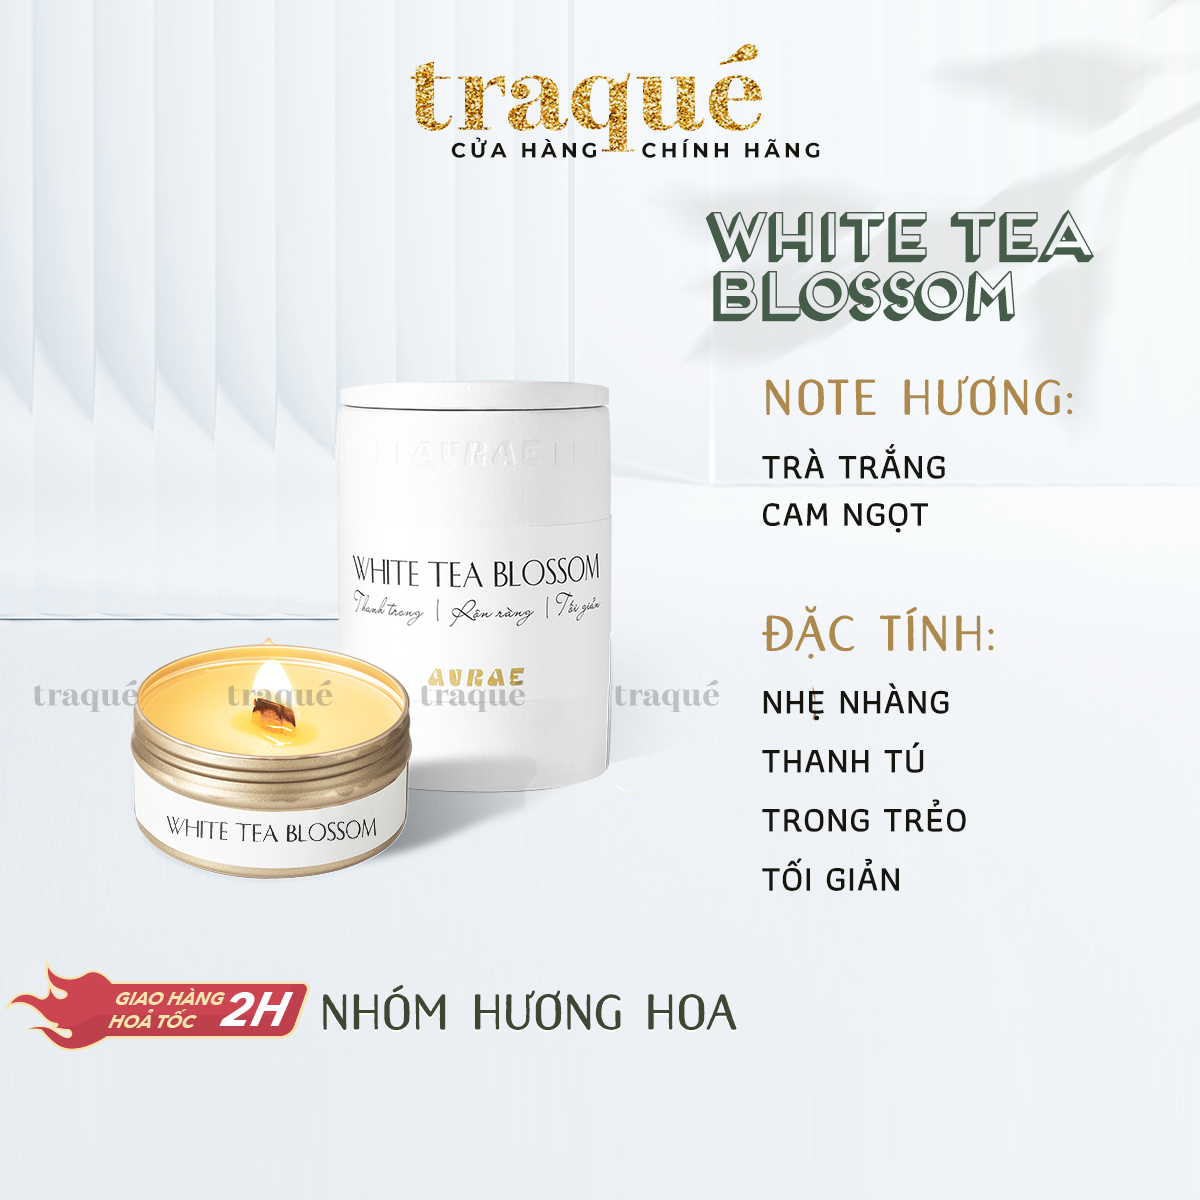 White Tea Blossom - Có thể refill - quà tặng kèm khi mua size 150g] Nến thơm tinh dầu Aurae - dòng Signature -SX tại VN thumbnail